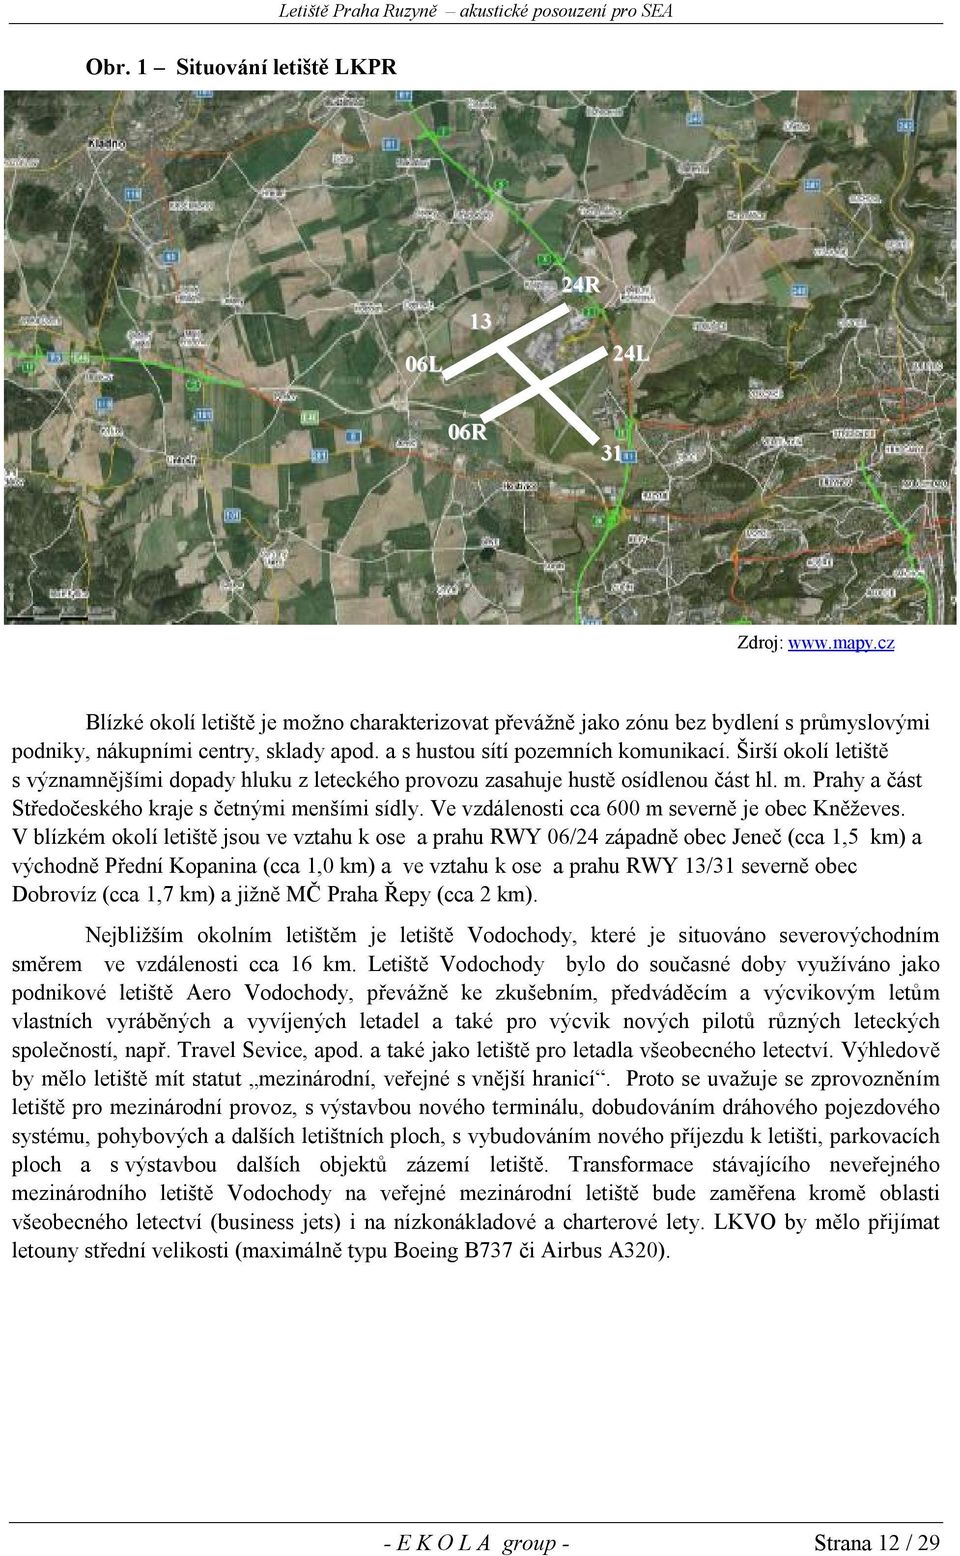 Širší okolí letiště s významnějšími dopady hluku z leteckého provozu zasahuje hustě osídlenou část hl. m. Prahy a část Středočeského kraje s četnými menšími sídly.